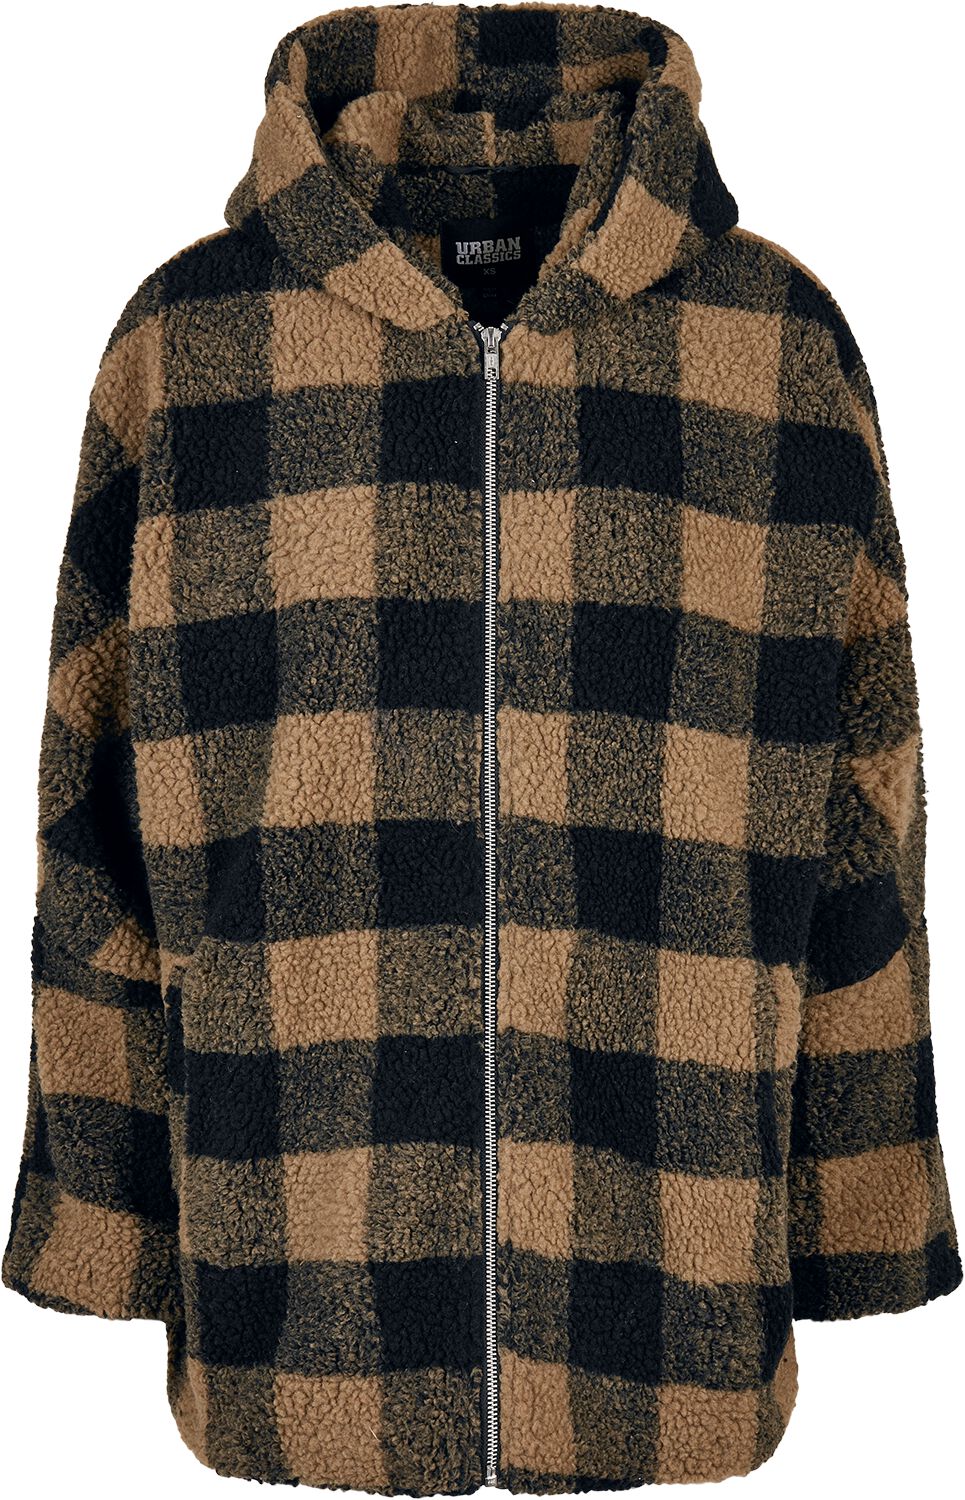 Urban Classics Übergangsjacke - Ladies Hooded Oversized Check Sherpa Jacket - XS bis S - für Damen - Größe S - braun